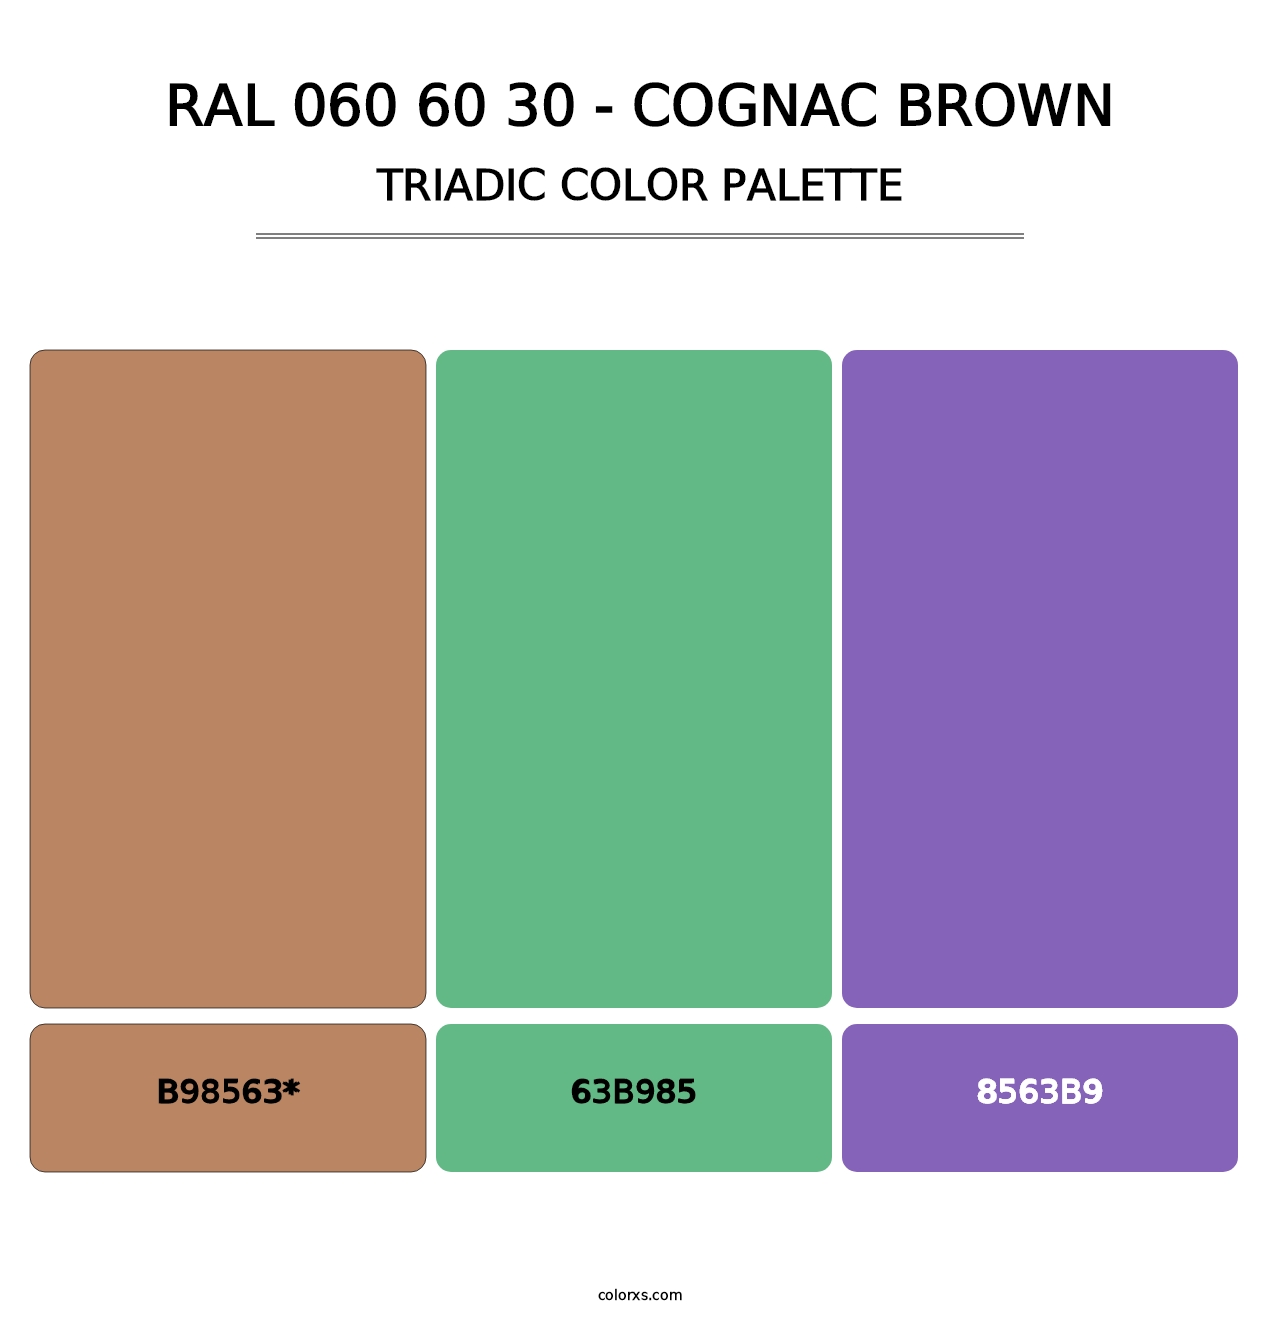 RAL 060 60 30 - Cognac Brown - Triadic Color Palette